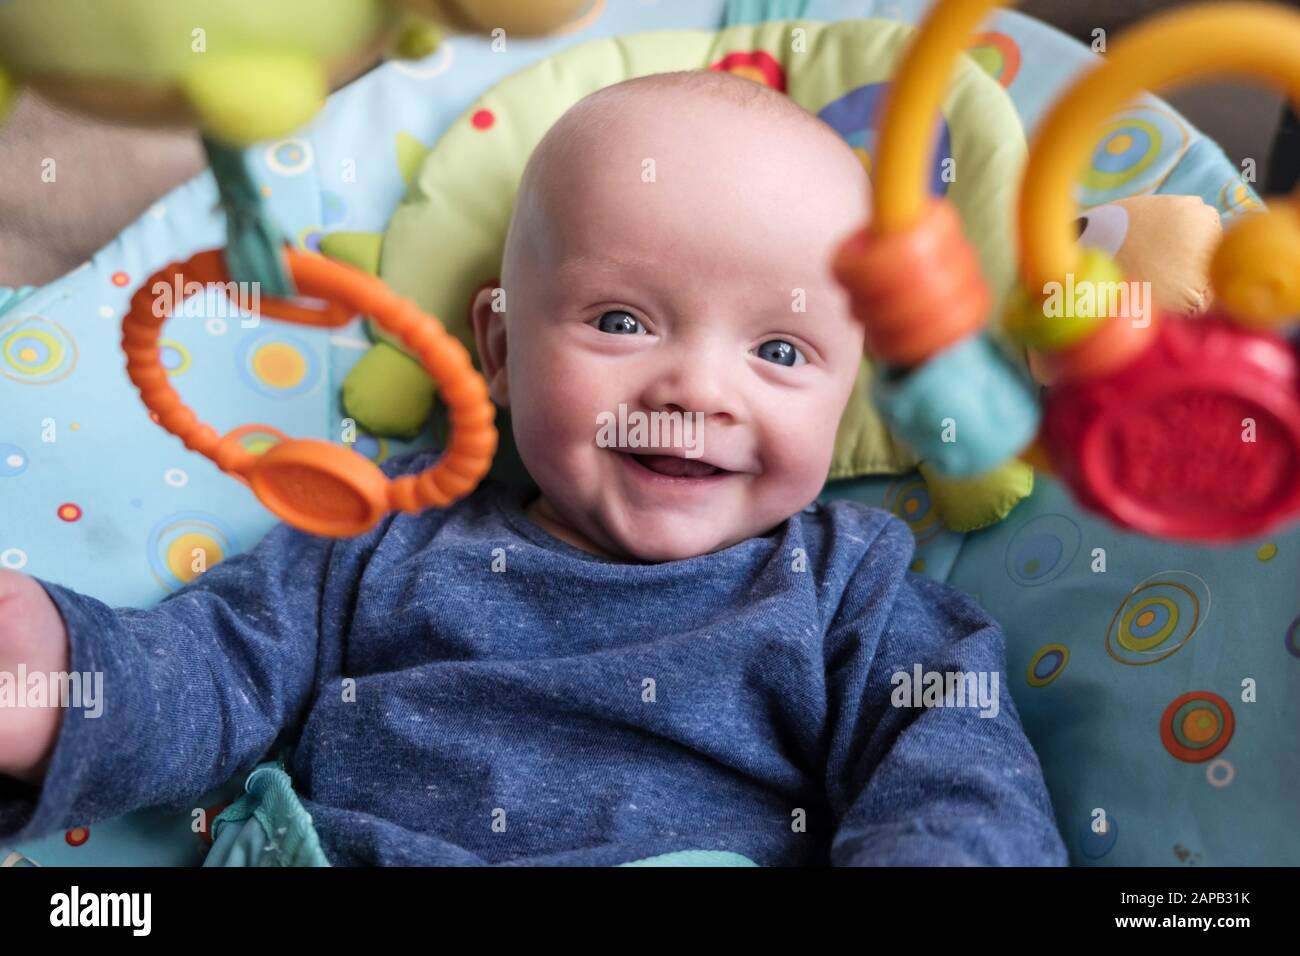 Ein glücklicher Babyjunge altern fünf Monate in einem Aktivitätsstuhl lächelnd und blicken auf hängende Spielzeuge. England, Großbritannien, Großbritannien Stockfoto